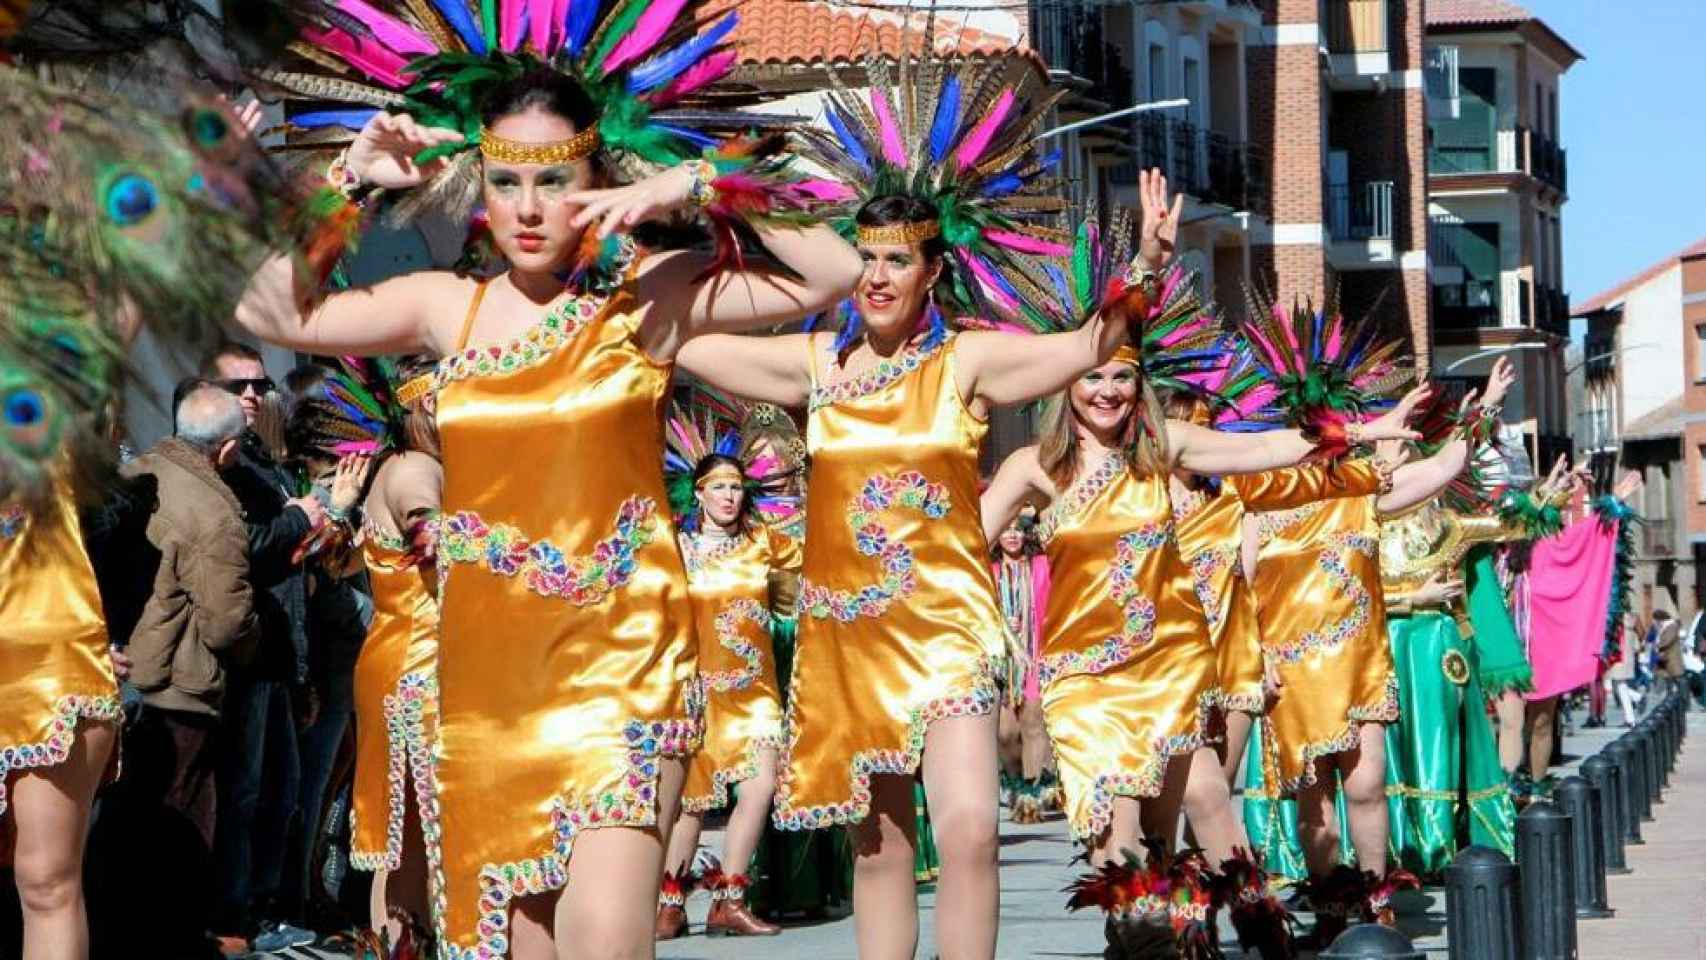 Foto de archivo del Carnaval de Almodóvar del Campo